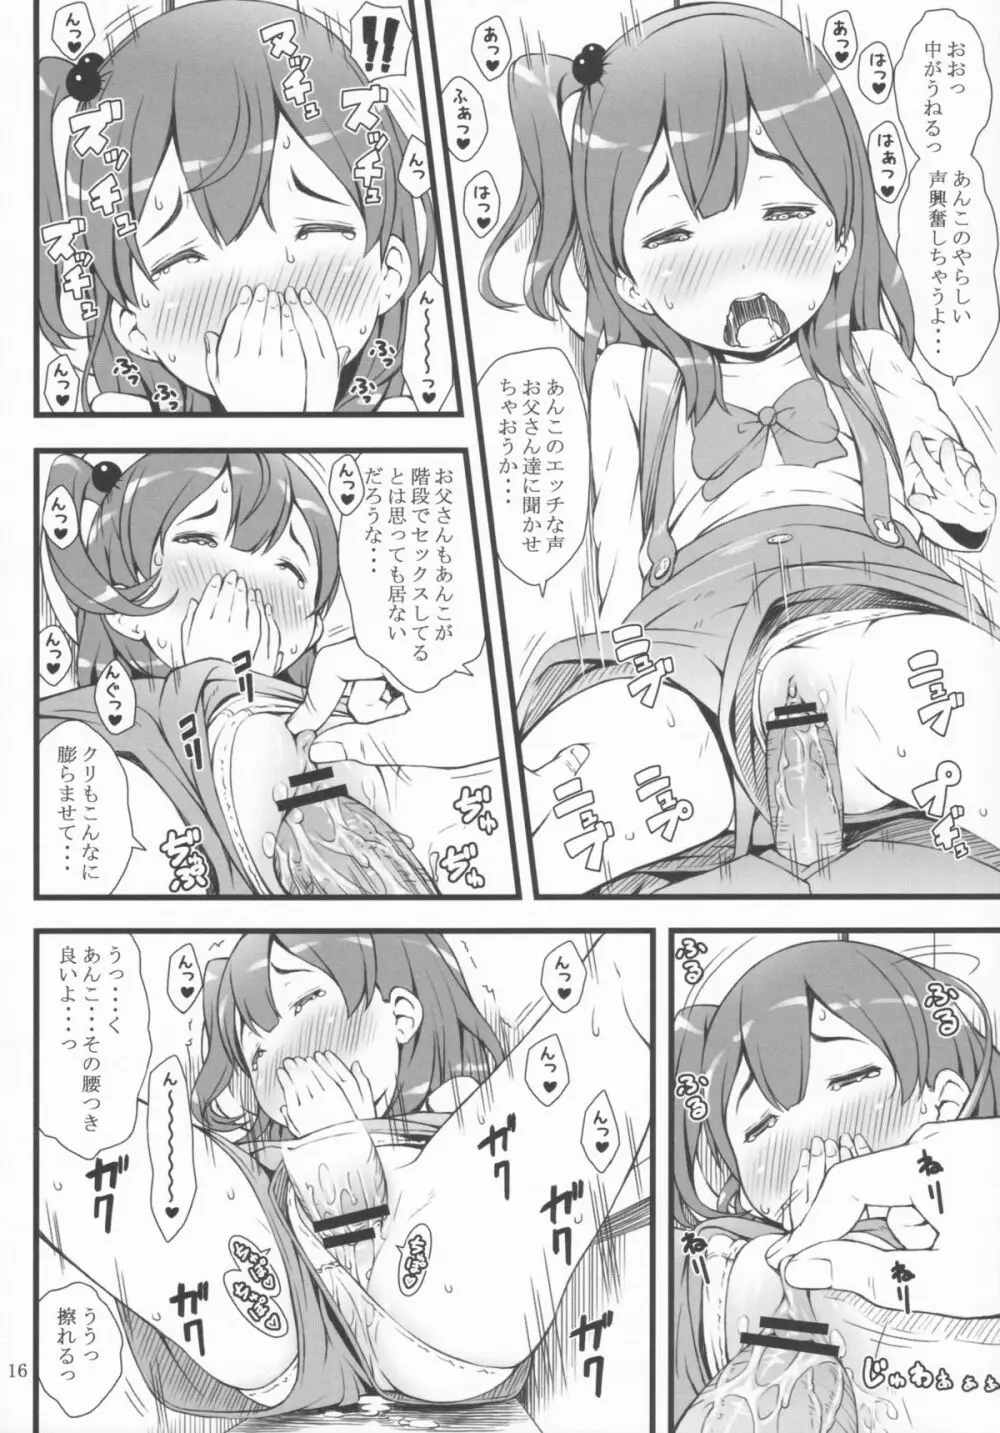 mochi-mochi anko chan - page15